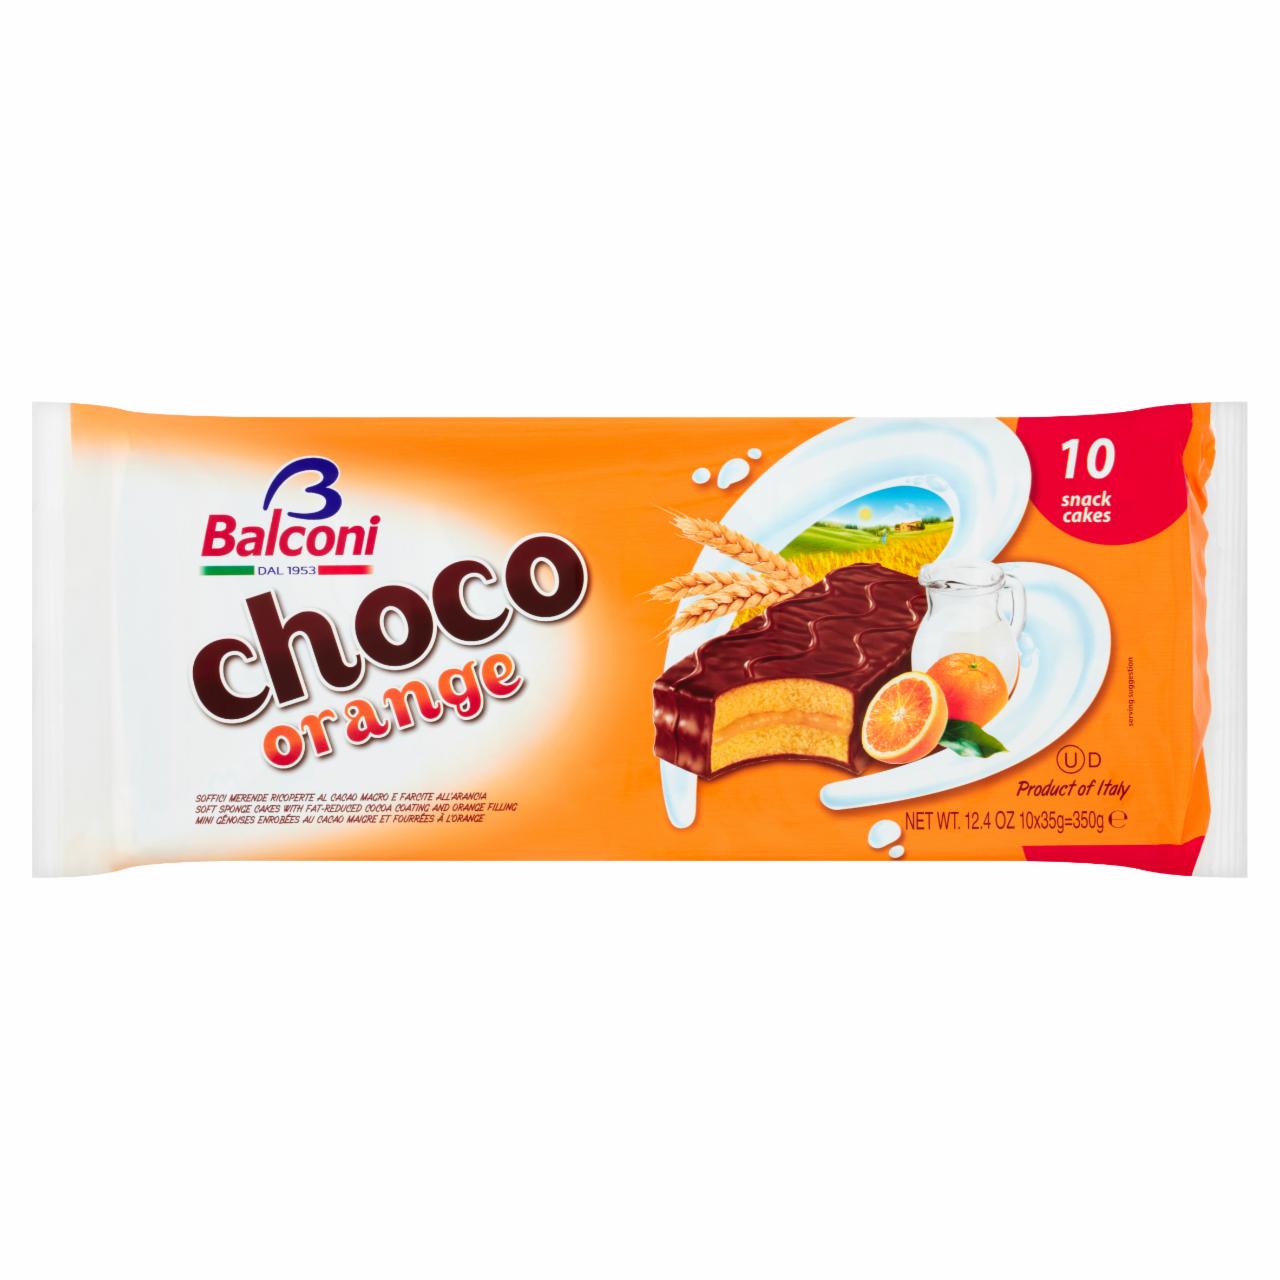 Képek - Balconi Choco Orange naranccsal töltött édes sütőipari termék 10 x 35 g (350 g)